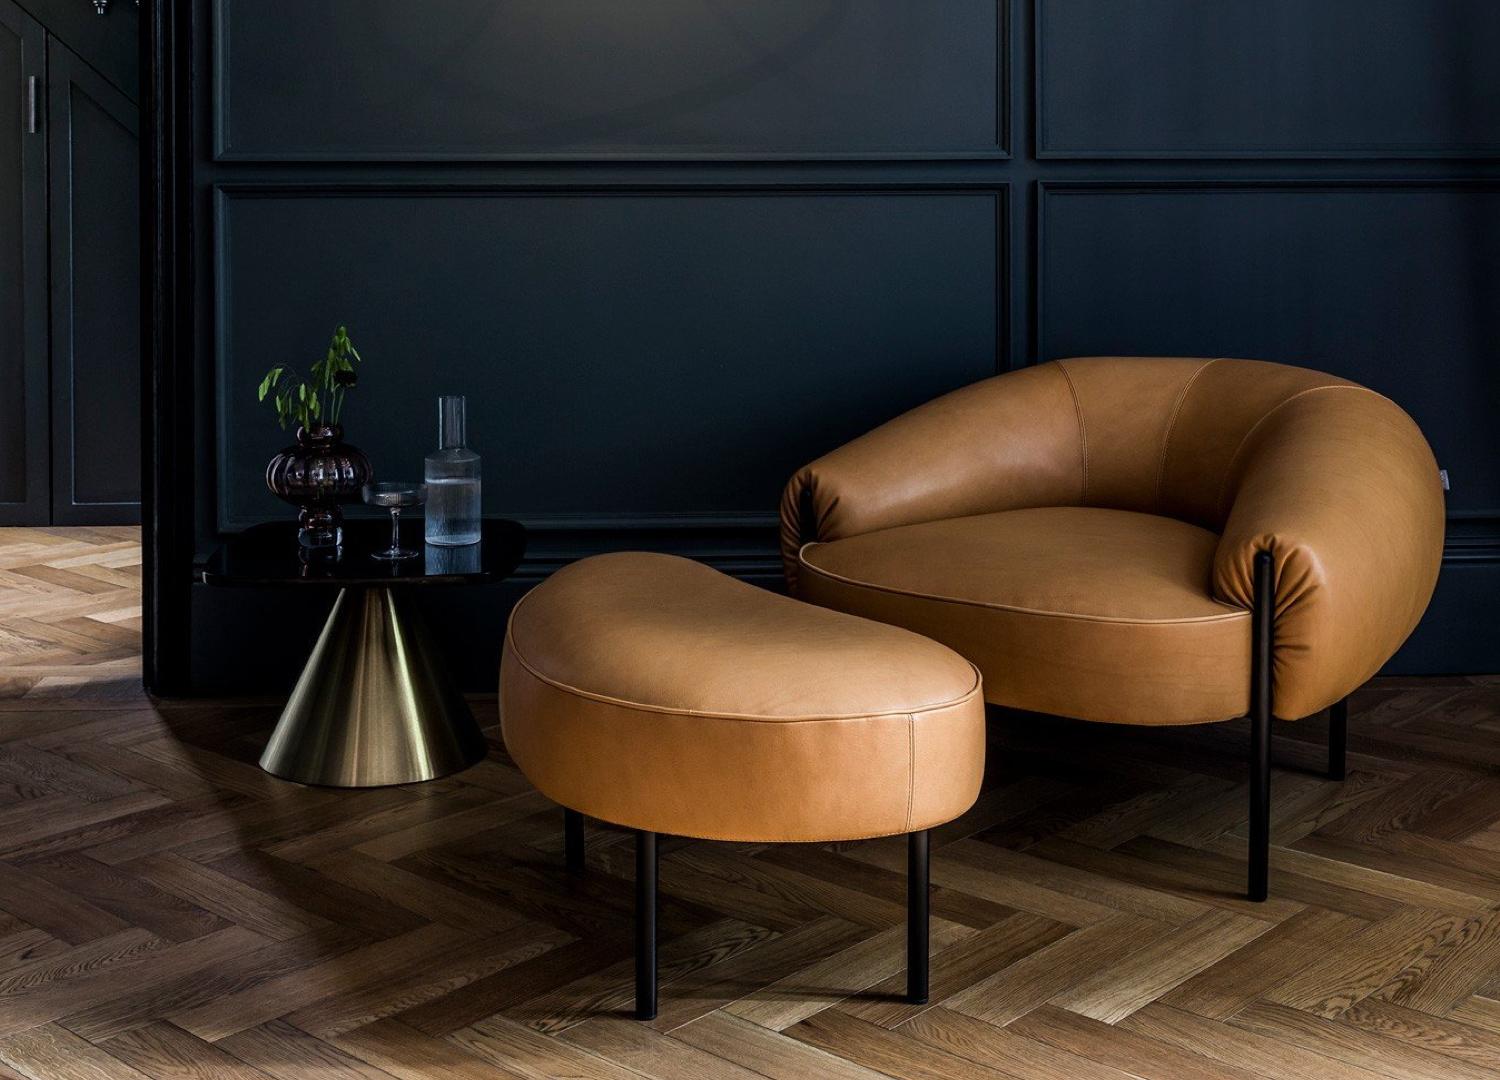 Zeitgenössischer Sessel 'Isola' von Amura Lab 
Designer: Lucy Kurrein

Abgebildetes Modell: Leder - Nubes 08

Abmessungen: 
- Sofa : H. 67 x B. 96 x T. 99 cm 

